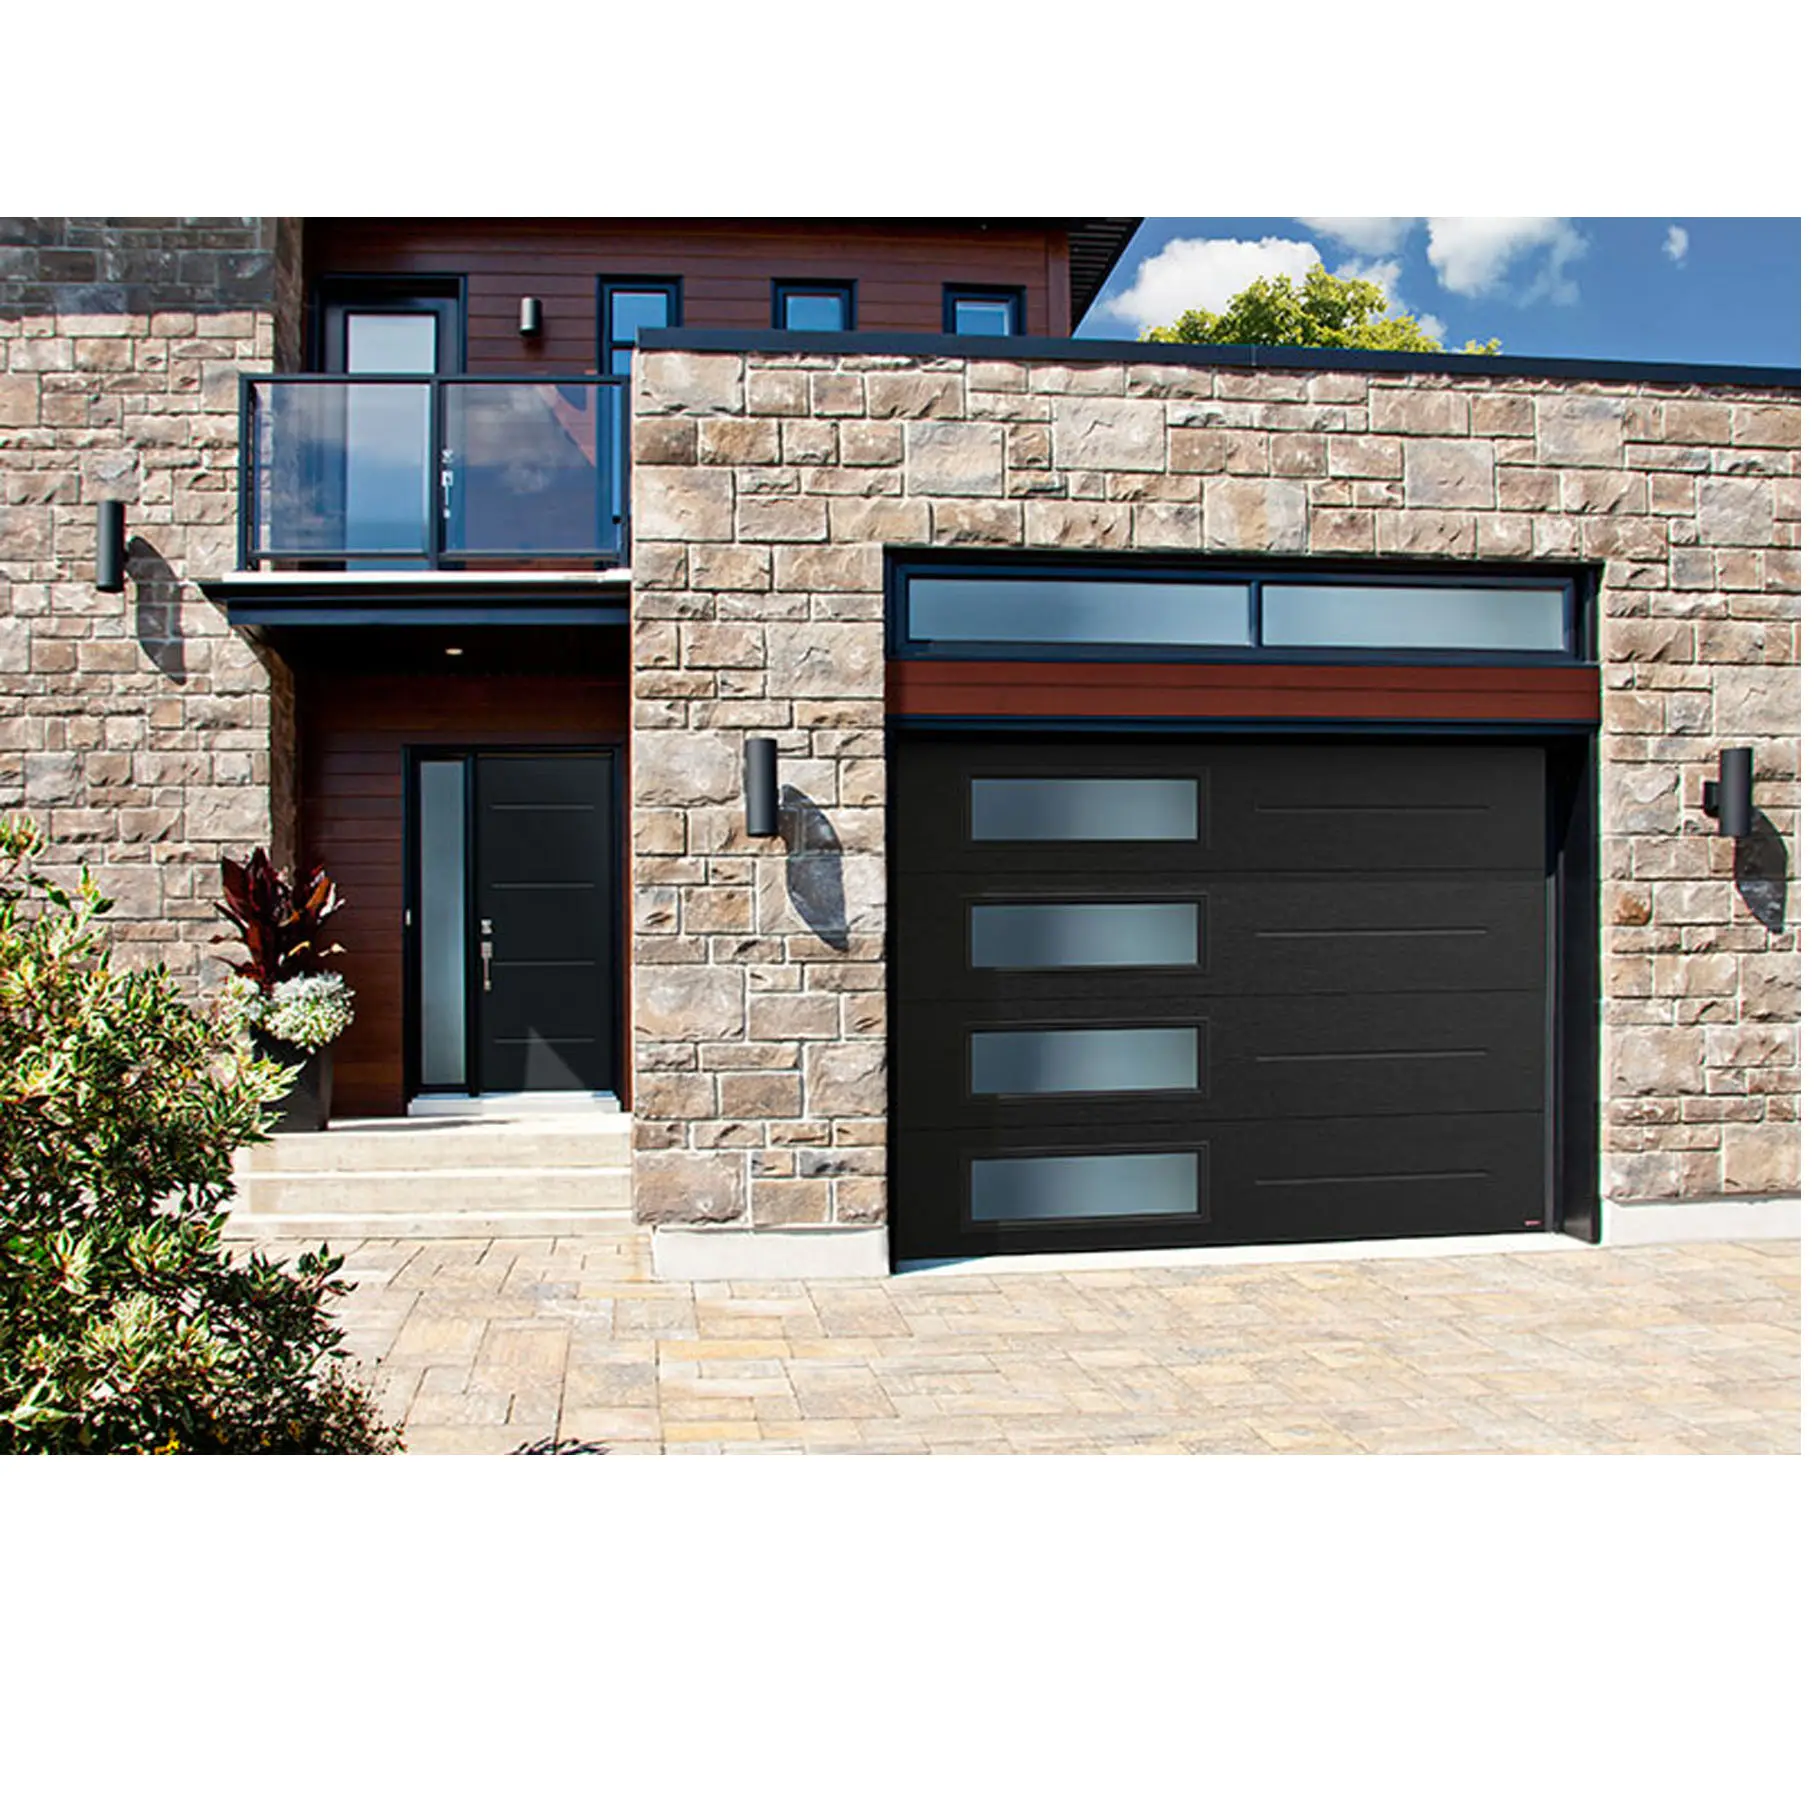 superlift wood grain insulated garage doors with pedestrian door aluminum garage doors